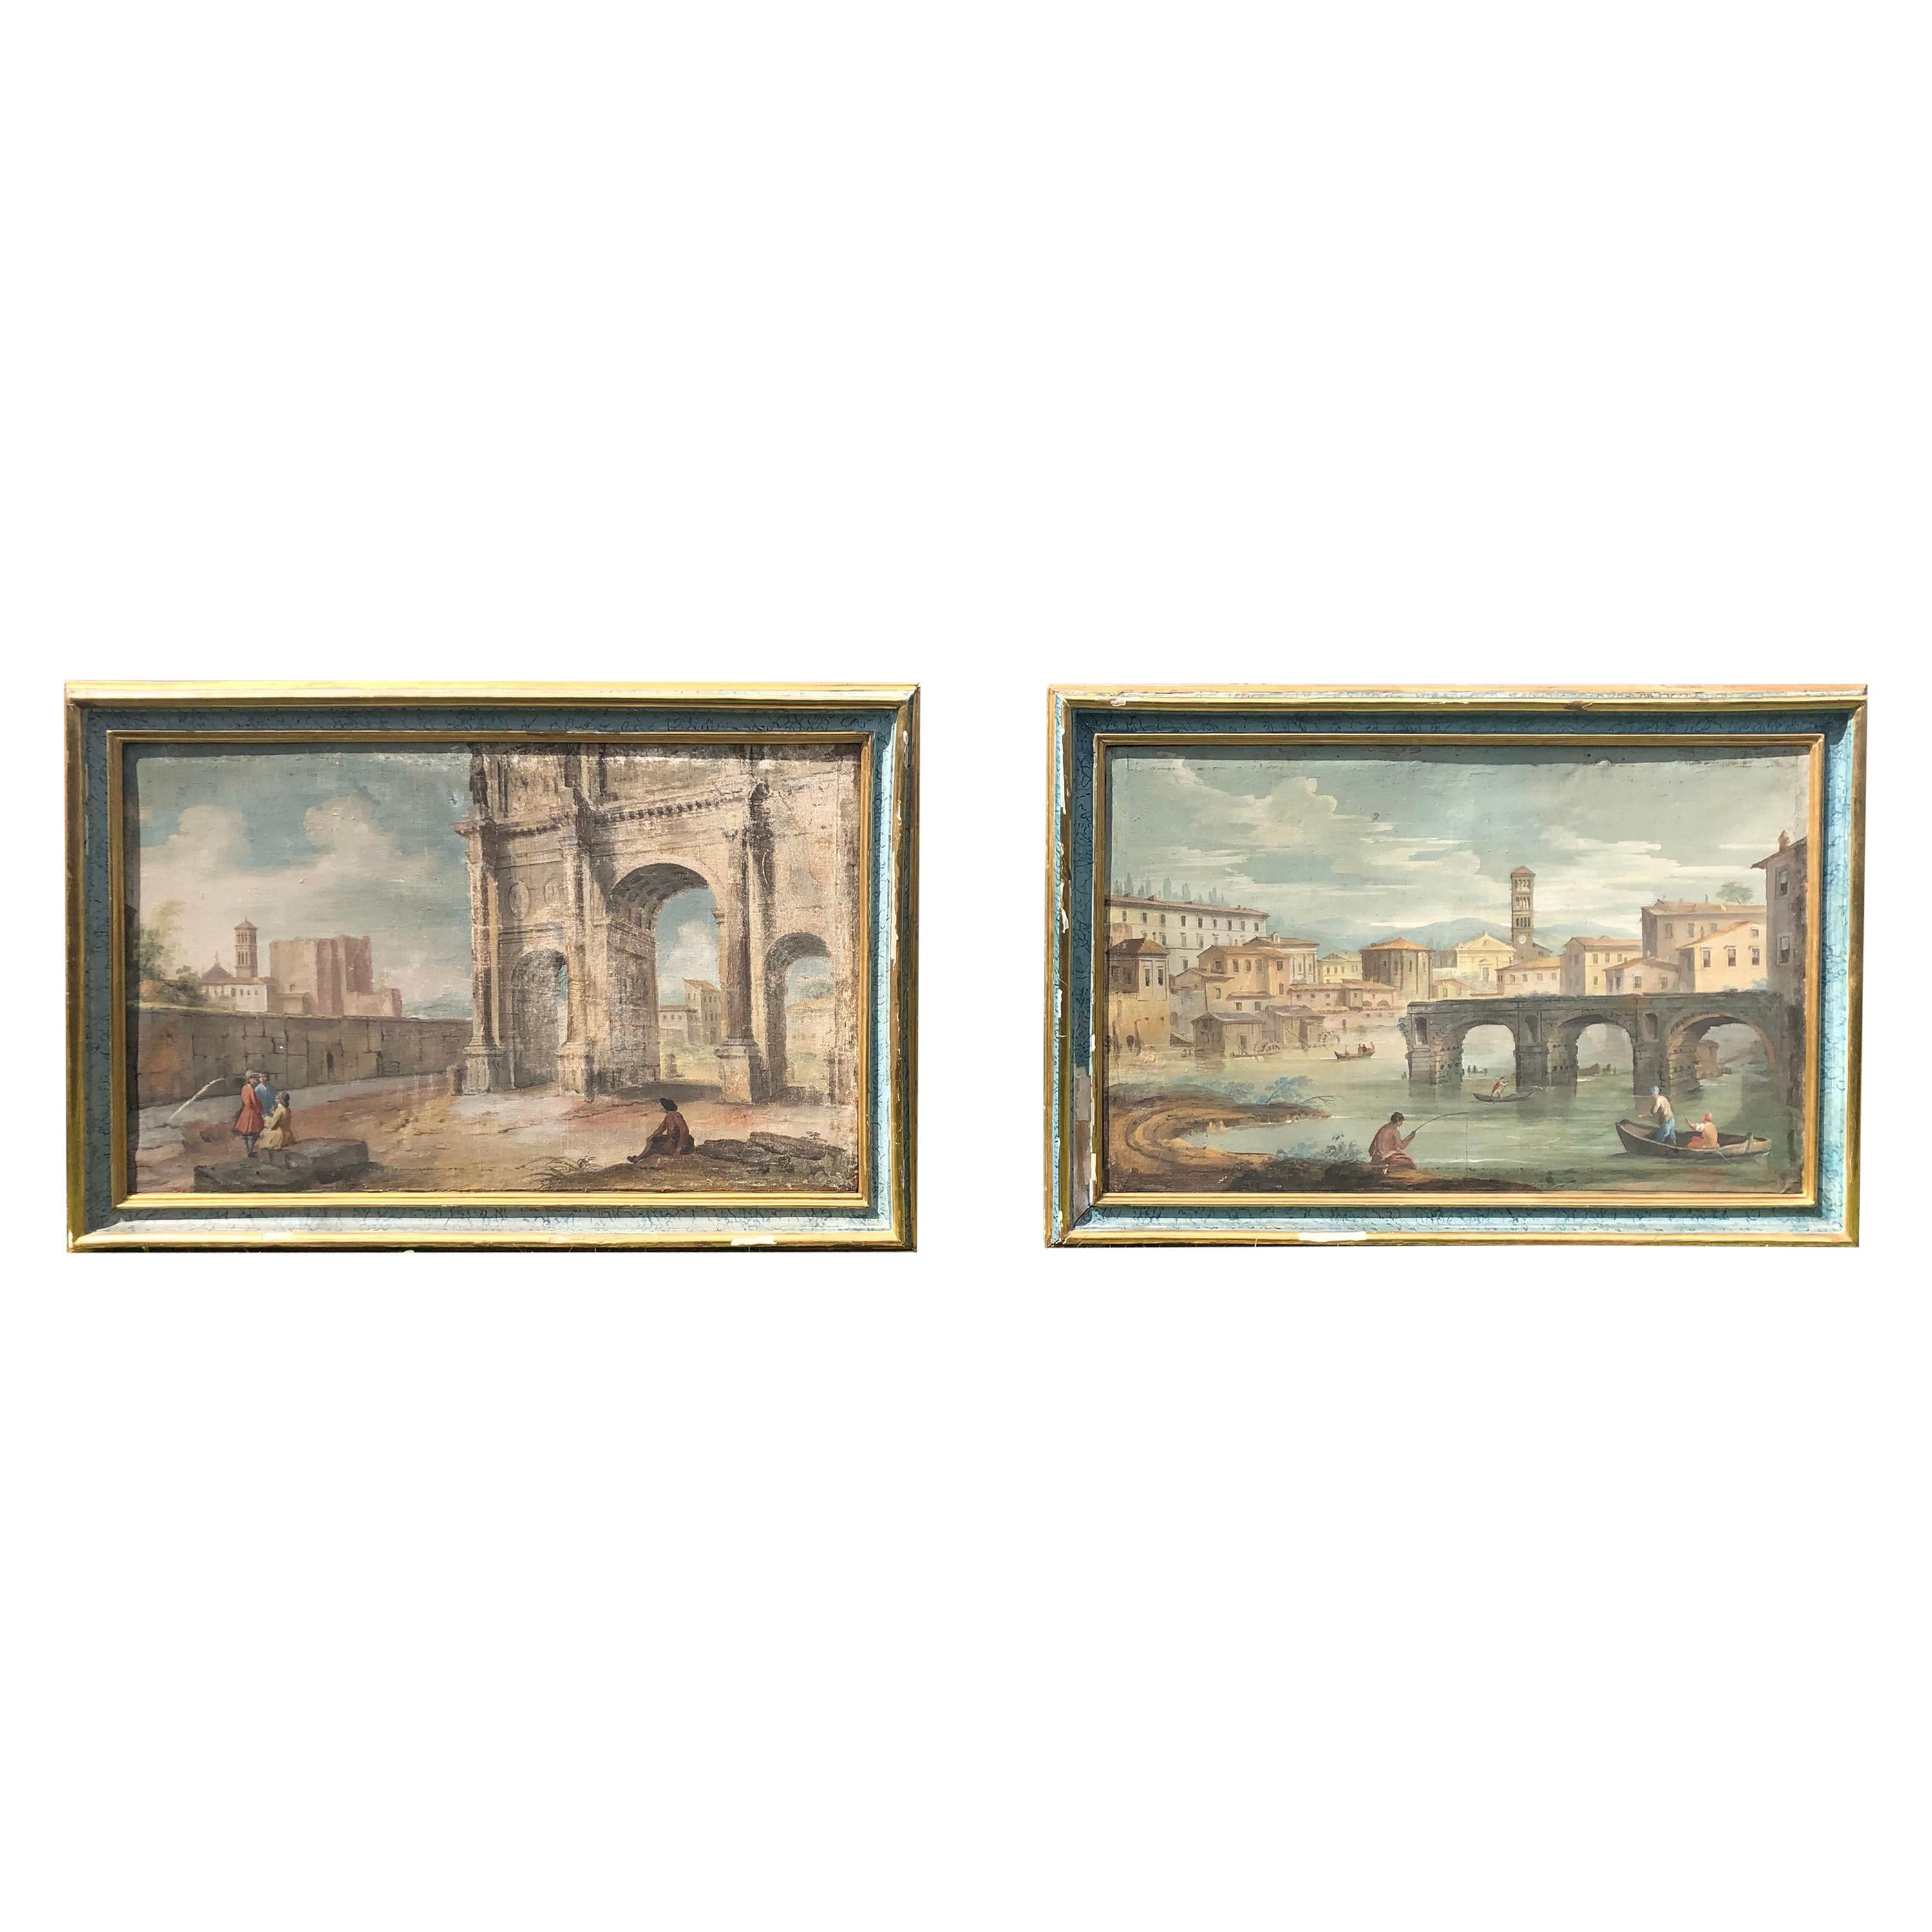 Pair of 18th Century Italian Paintings on Hand Woven Linen